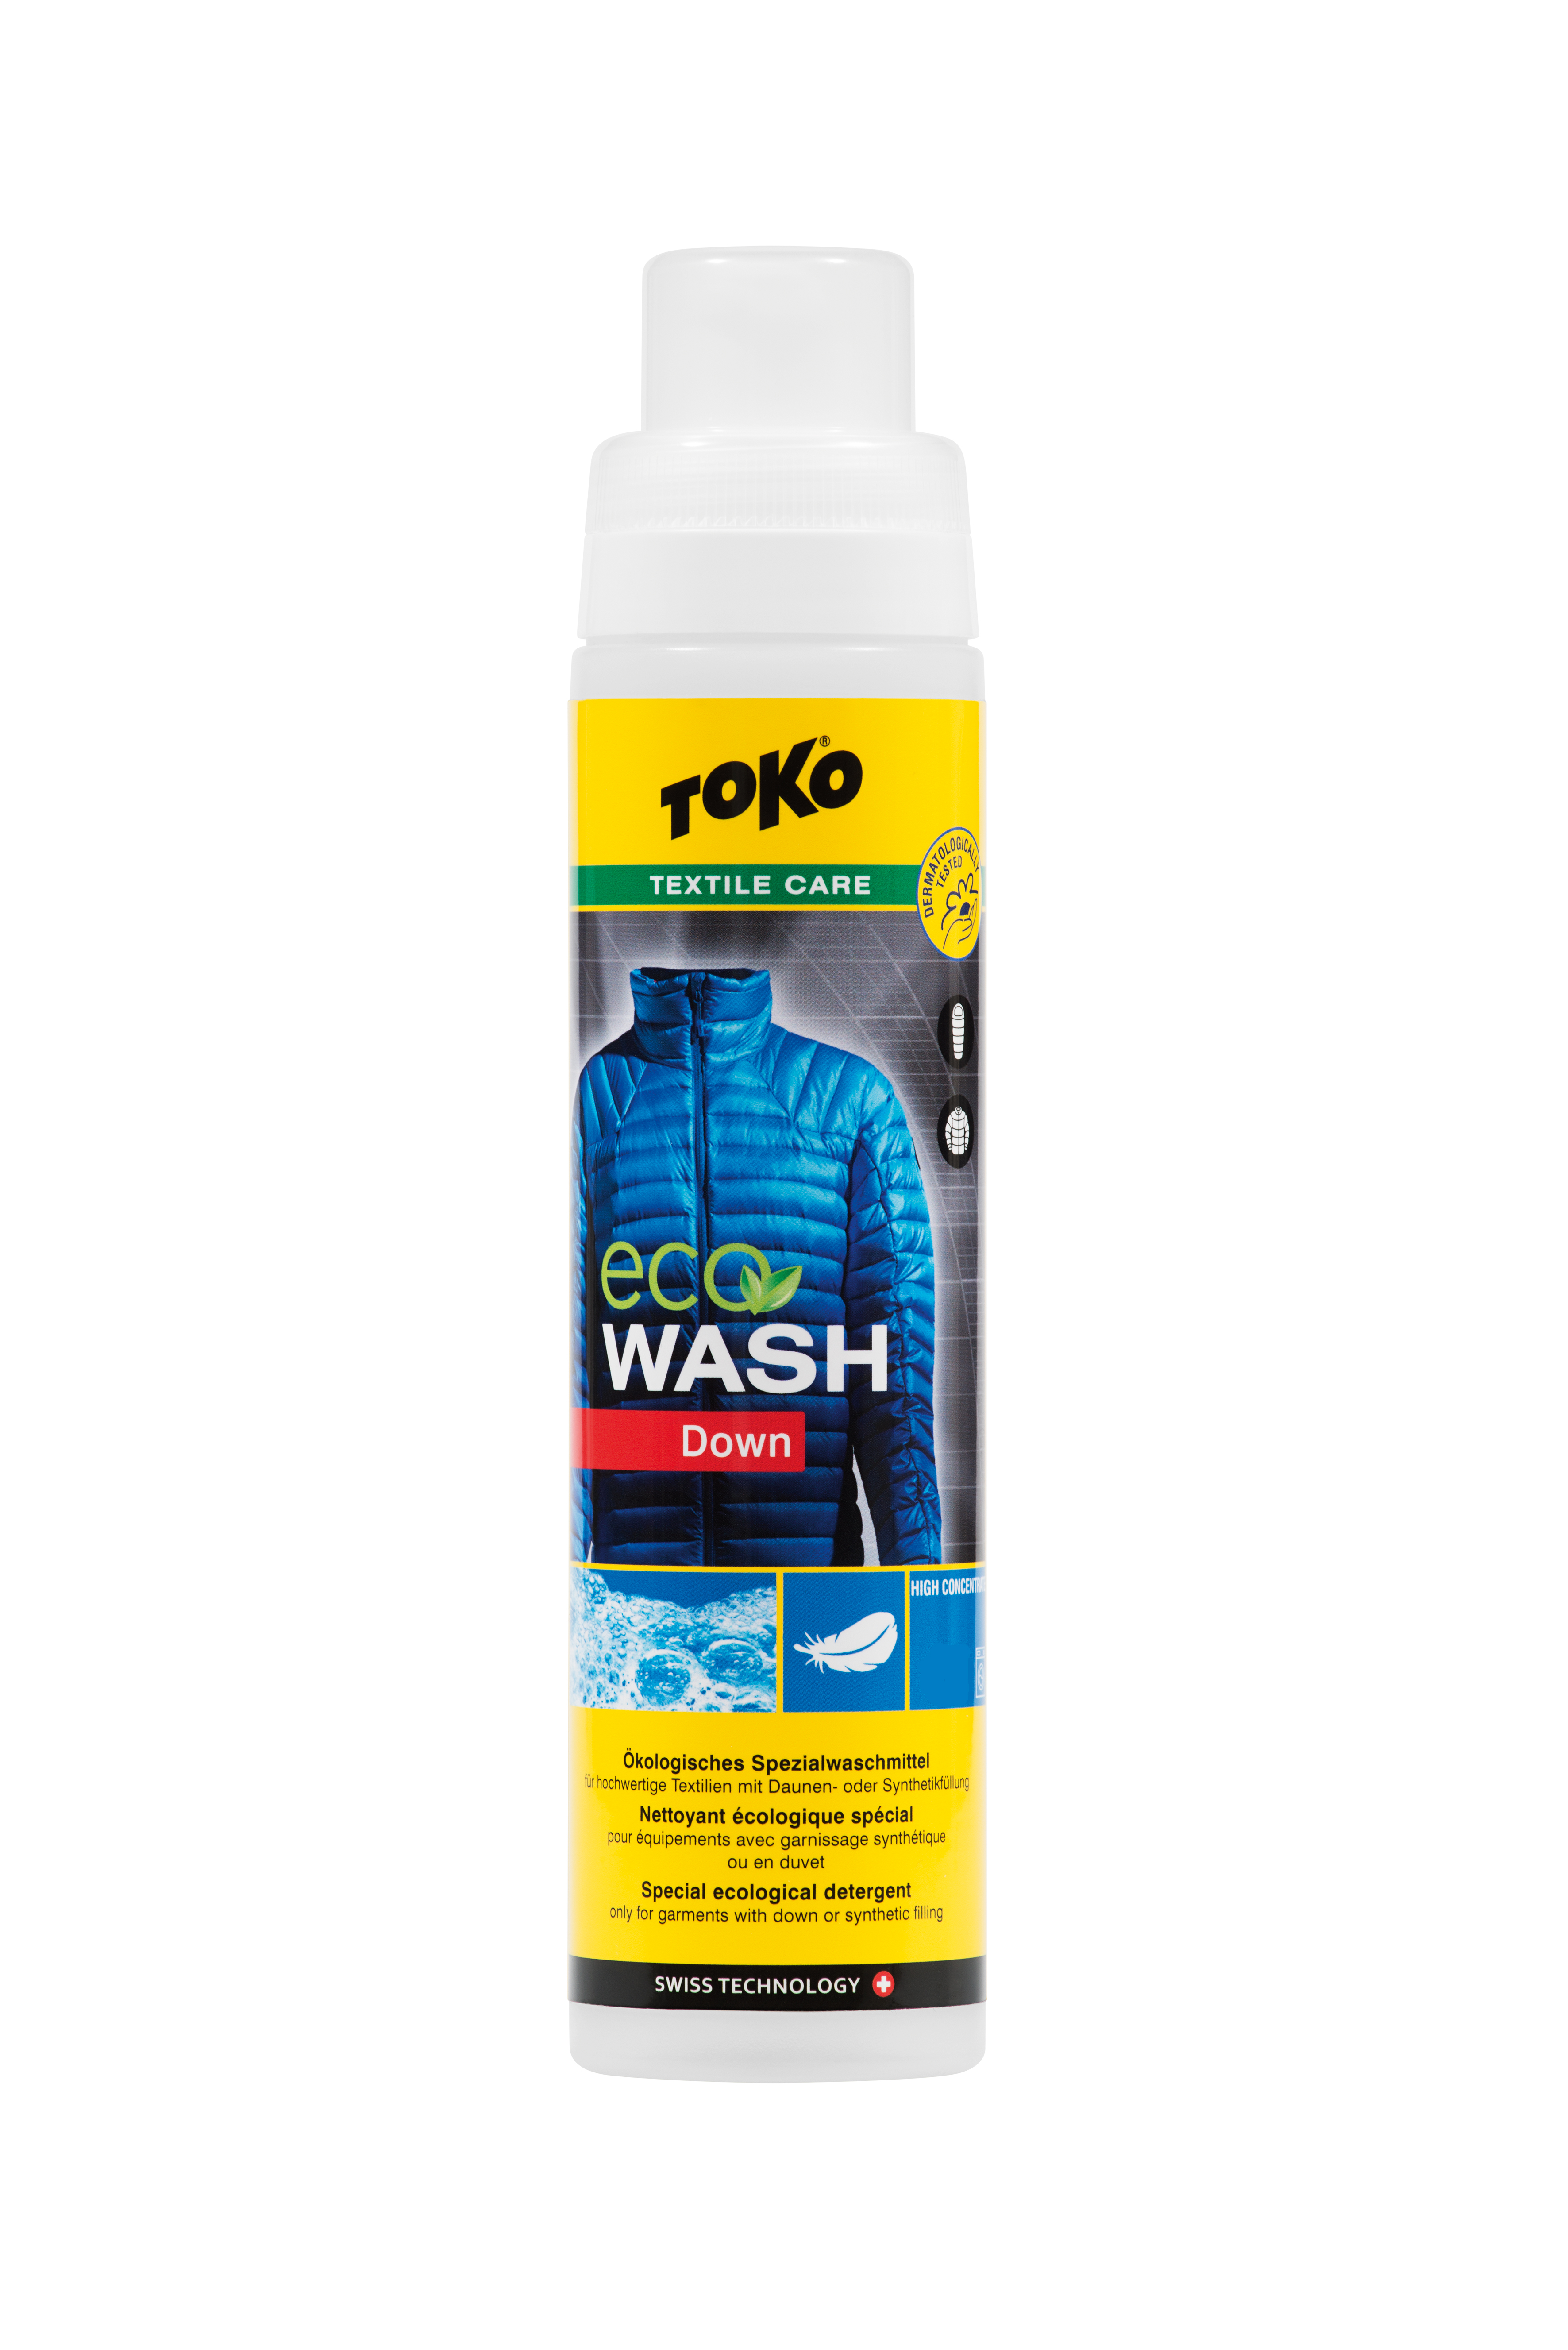 [Translate to english:] TOKO Eco Down Wash